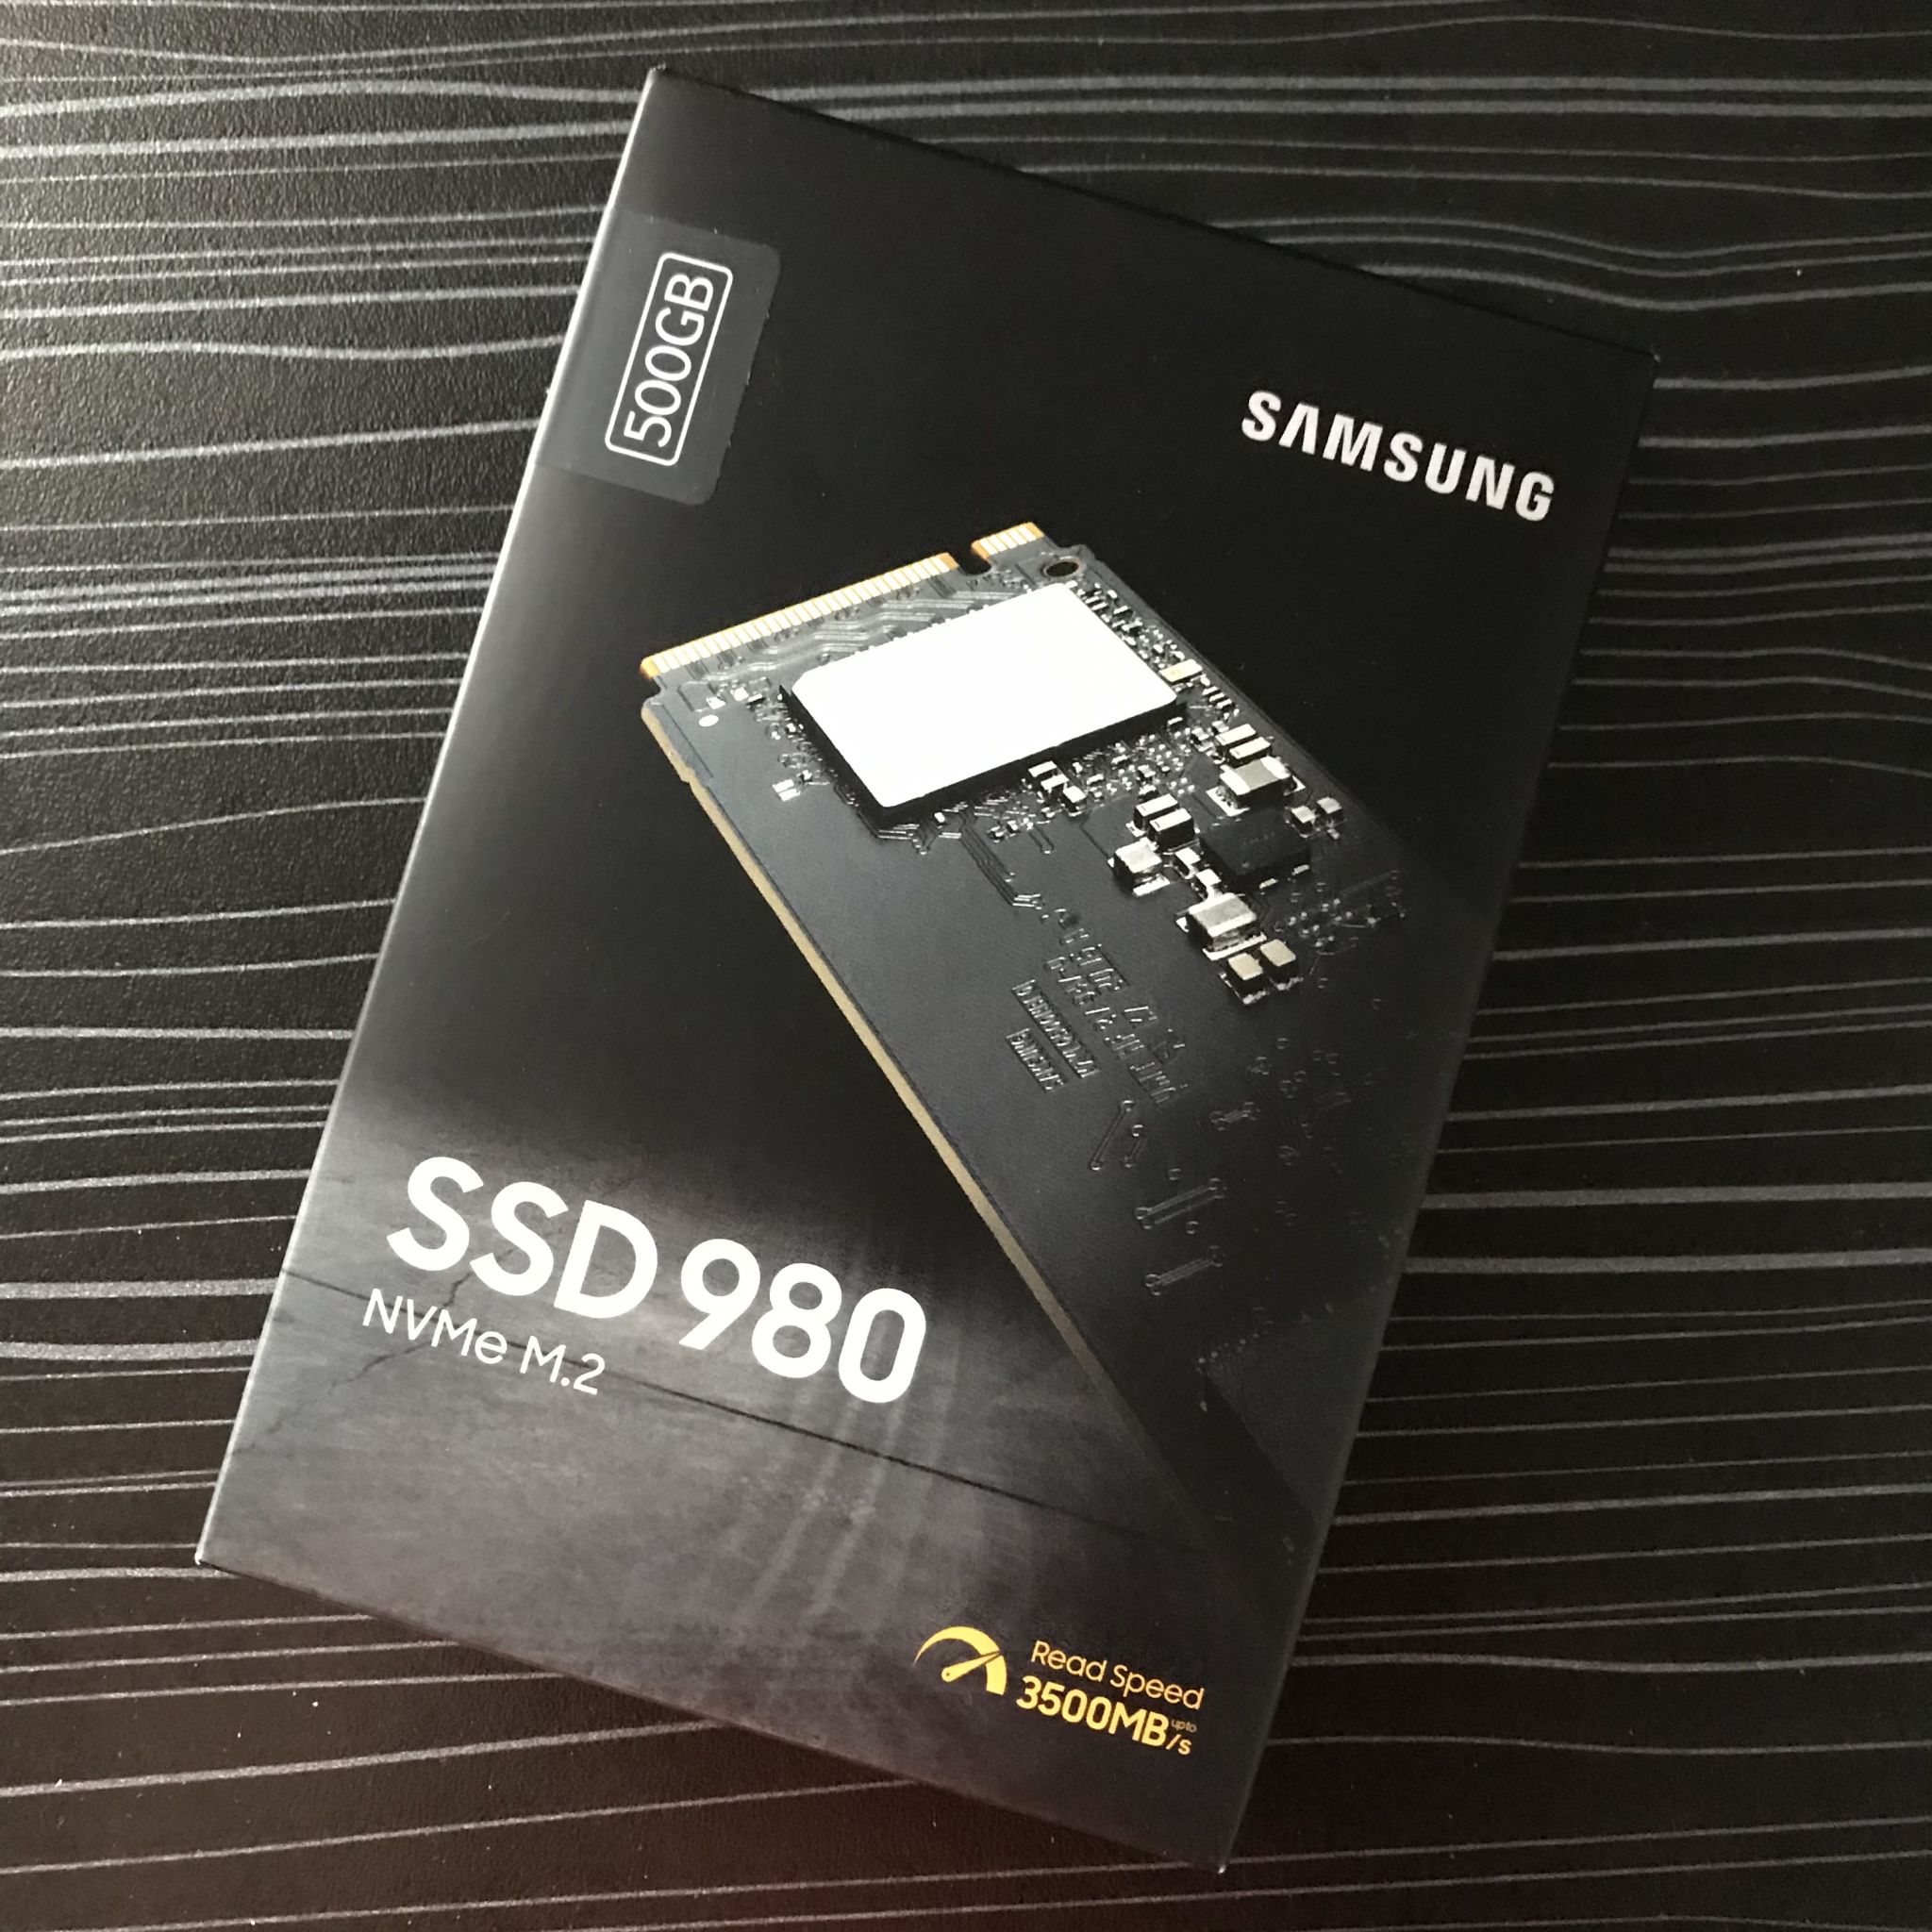 Samsung 980 500gb. Samsung SSD 980 500gb. SSD Samsung 980 EVO. Samsung 980 500 GB M.2. Samsung SSD 980 Pro 500gb.